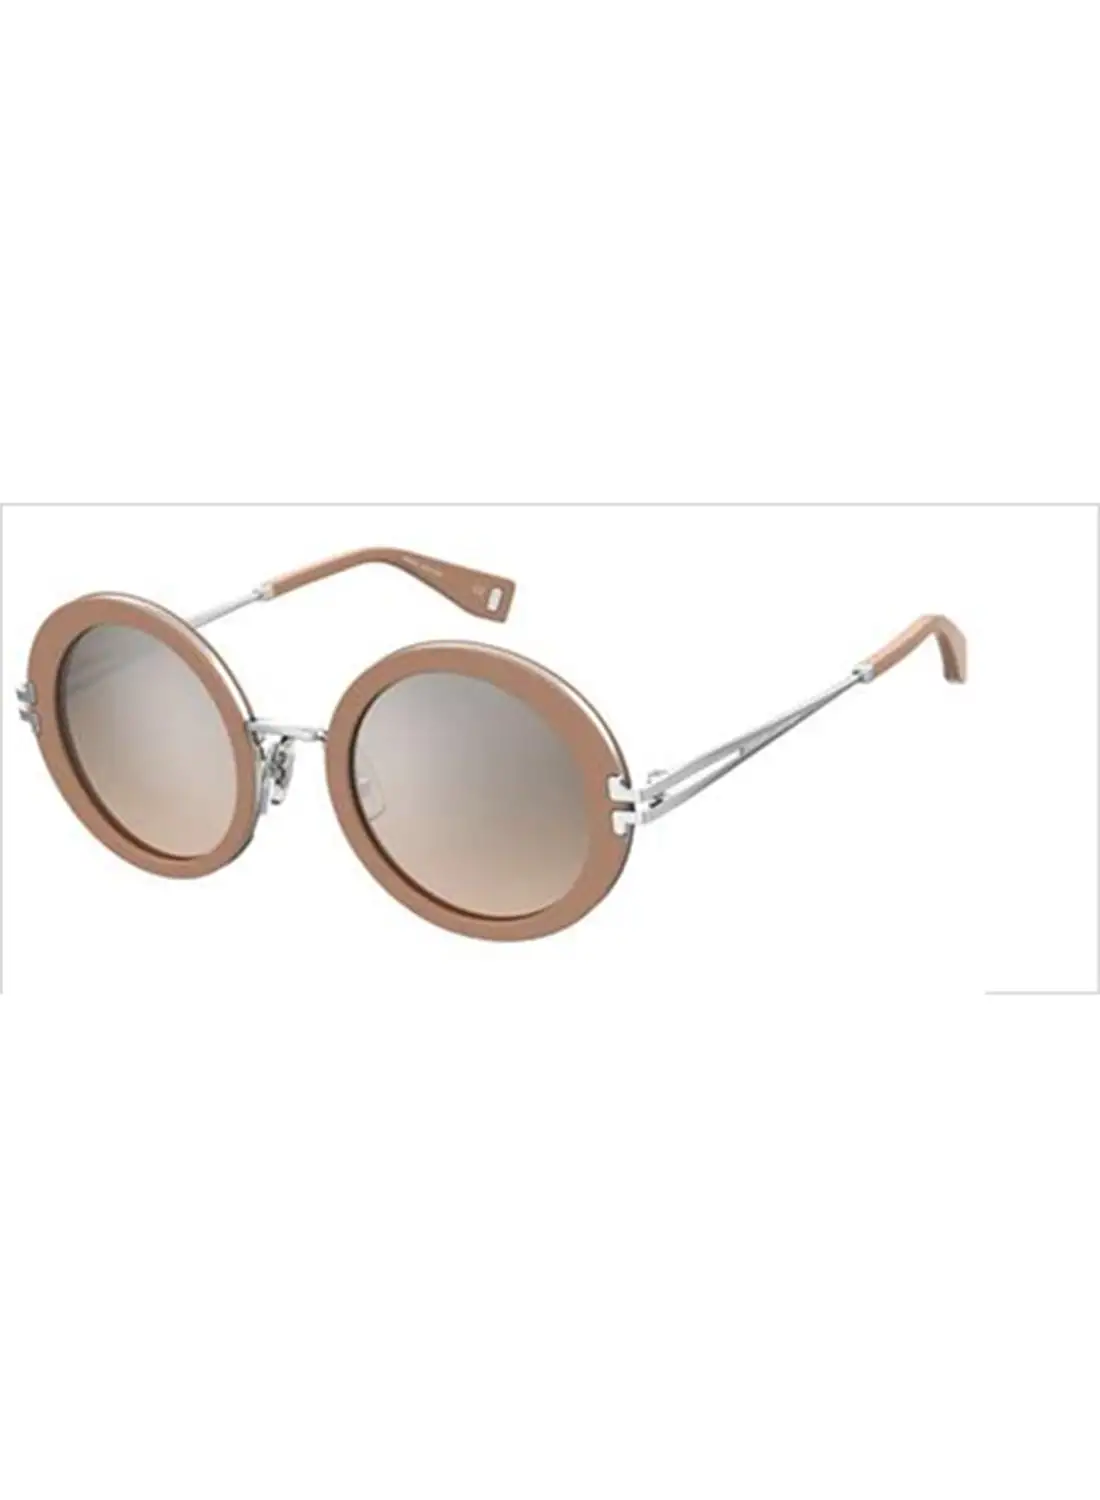 Marc Jacobs نظارة شمسية دائرية للنساء للحماية من الأشعة فوق البنفسجية - Mj 1102/S Pink 24 - مقاس العدسة: 49.1 ملم